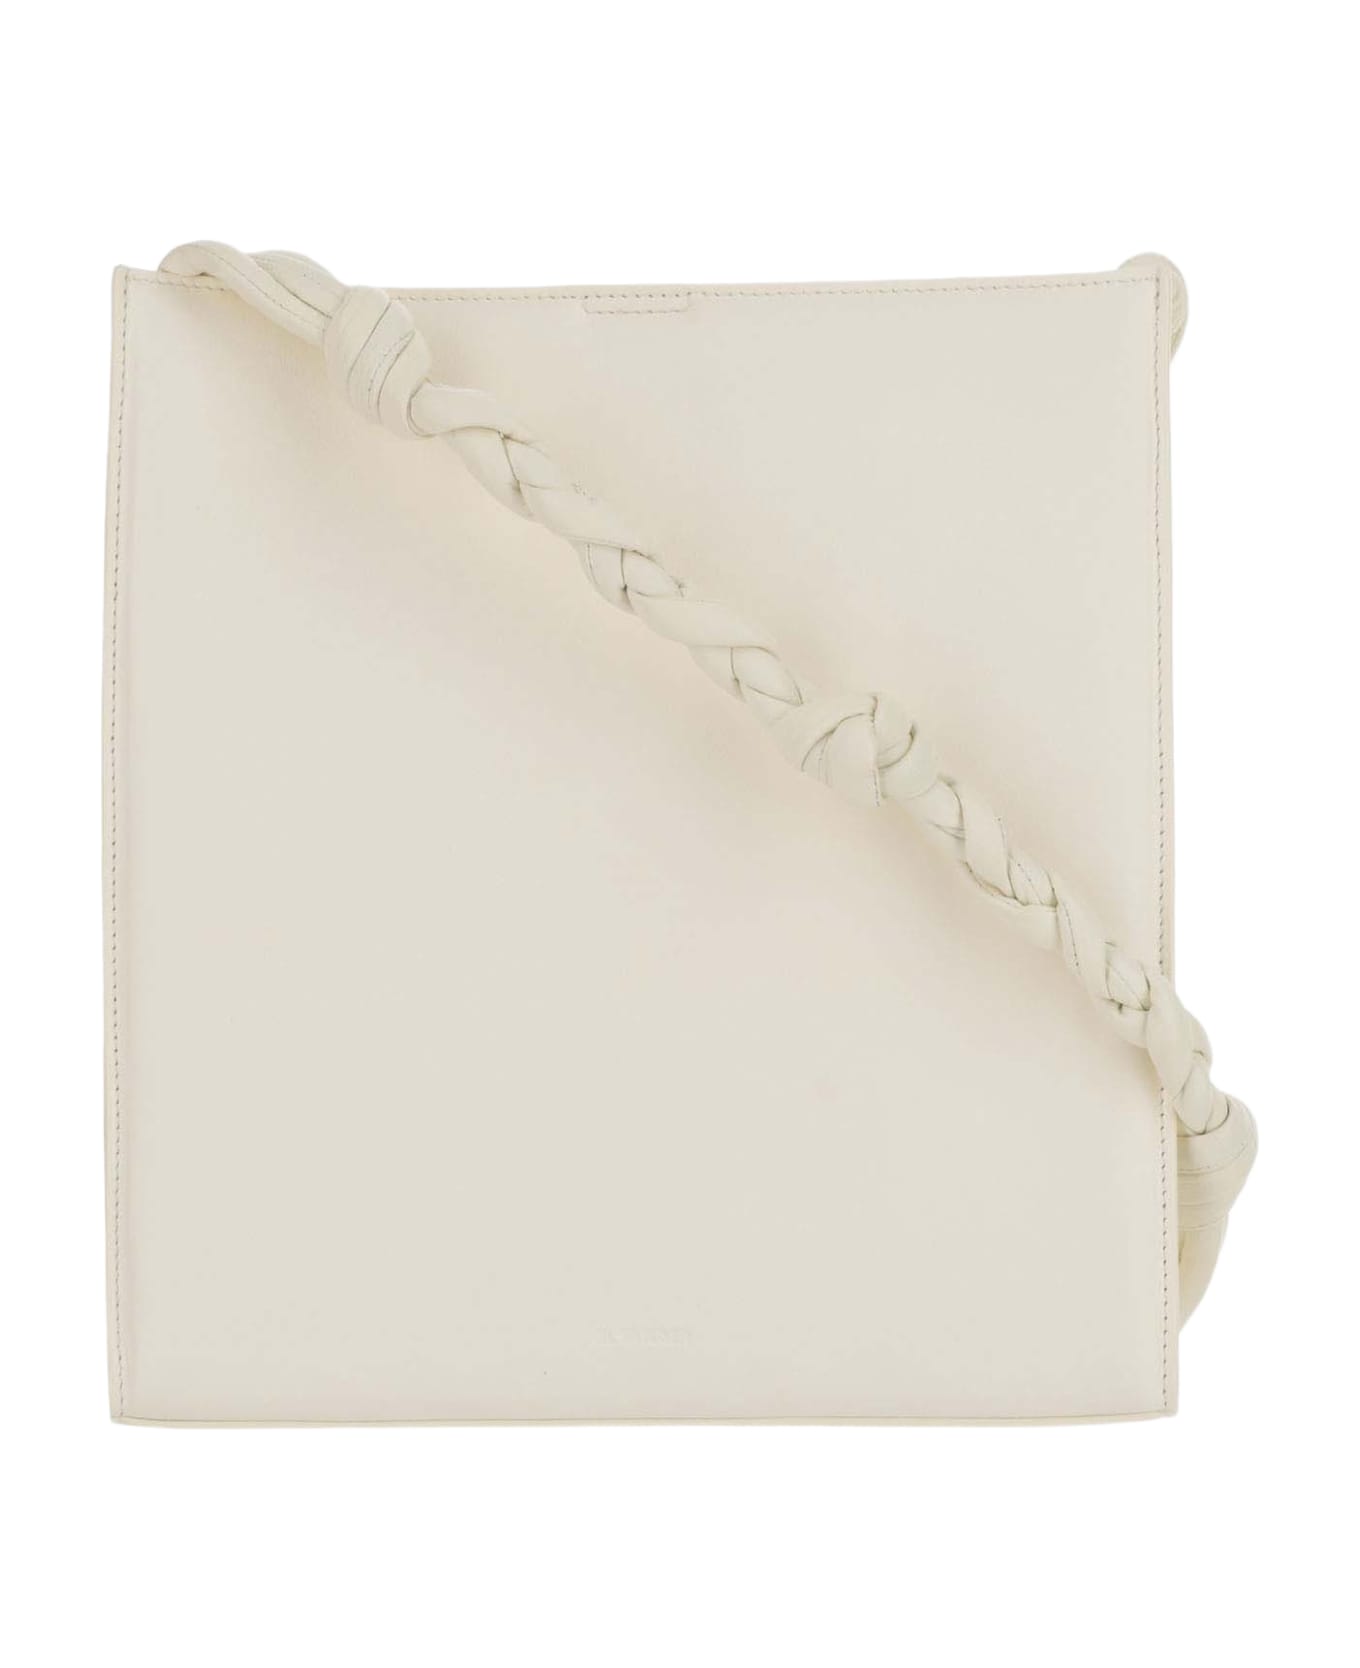 Jil Sander Medium Tangle Bag - Ivory